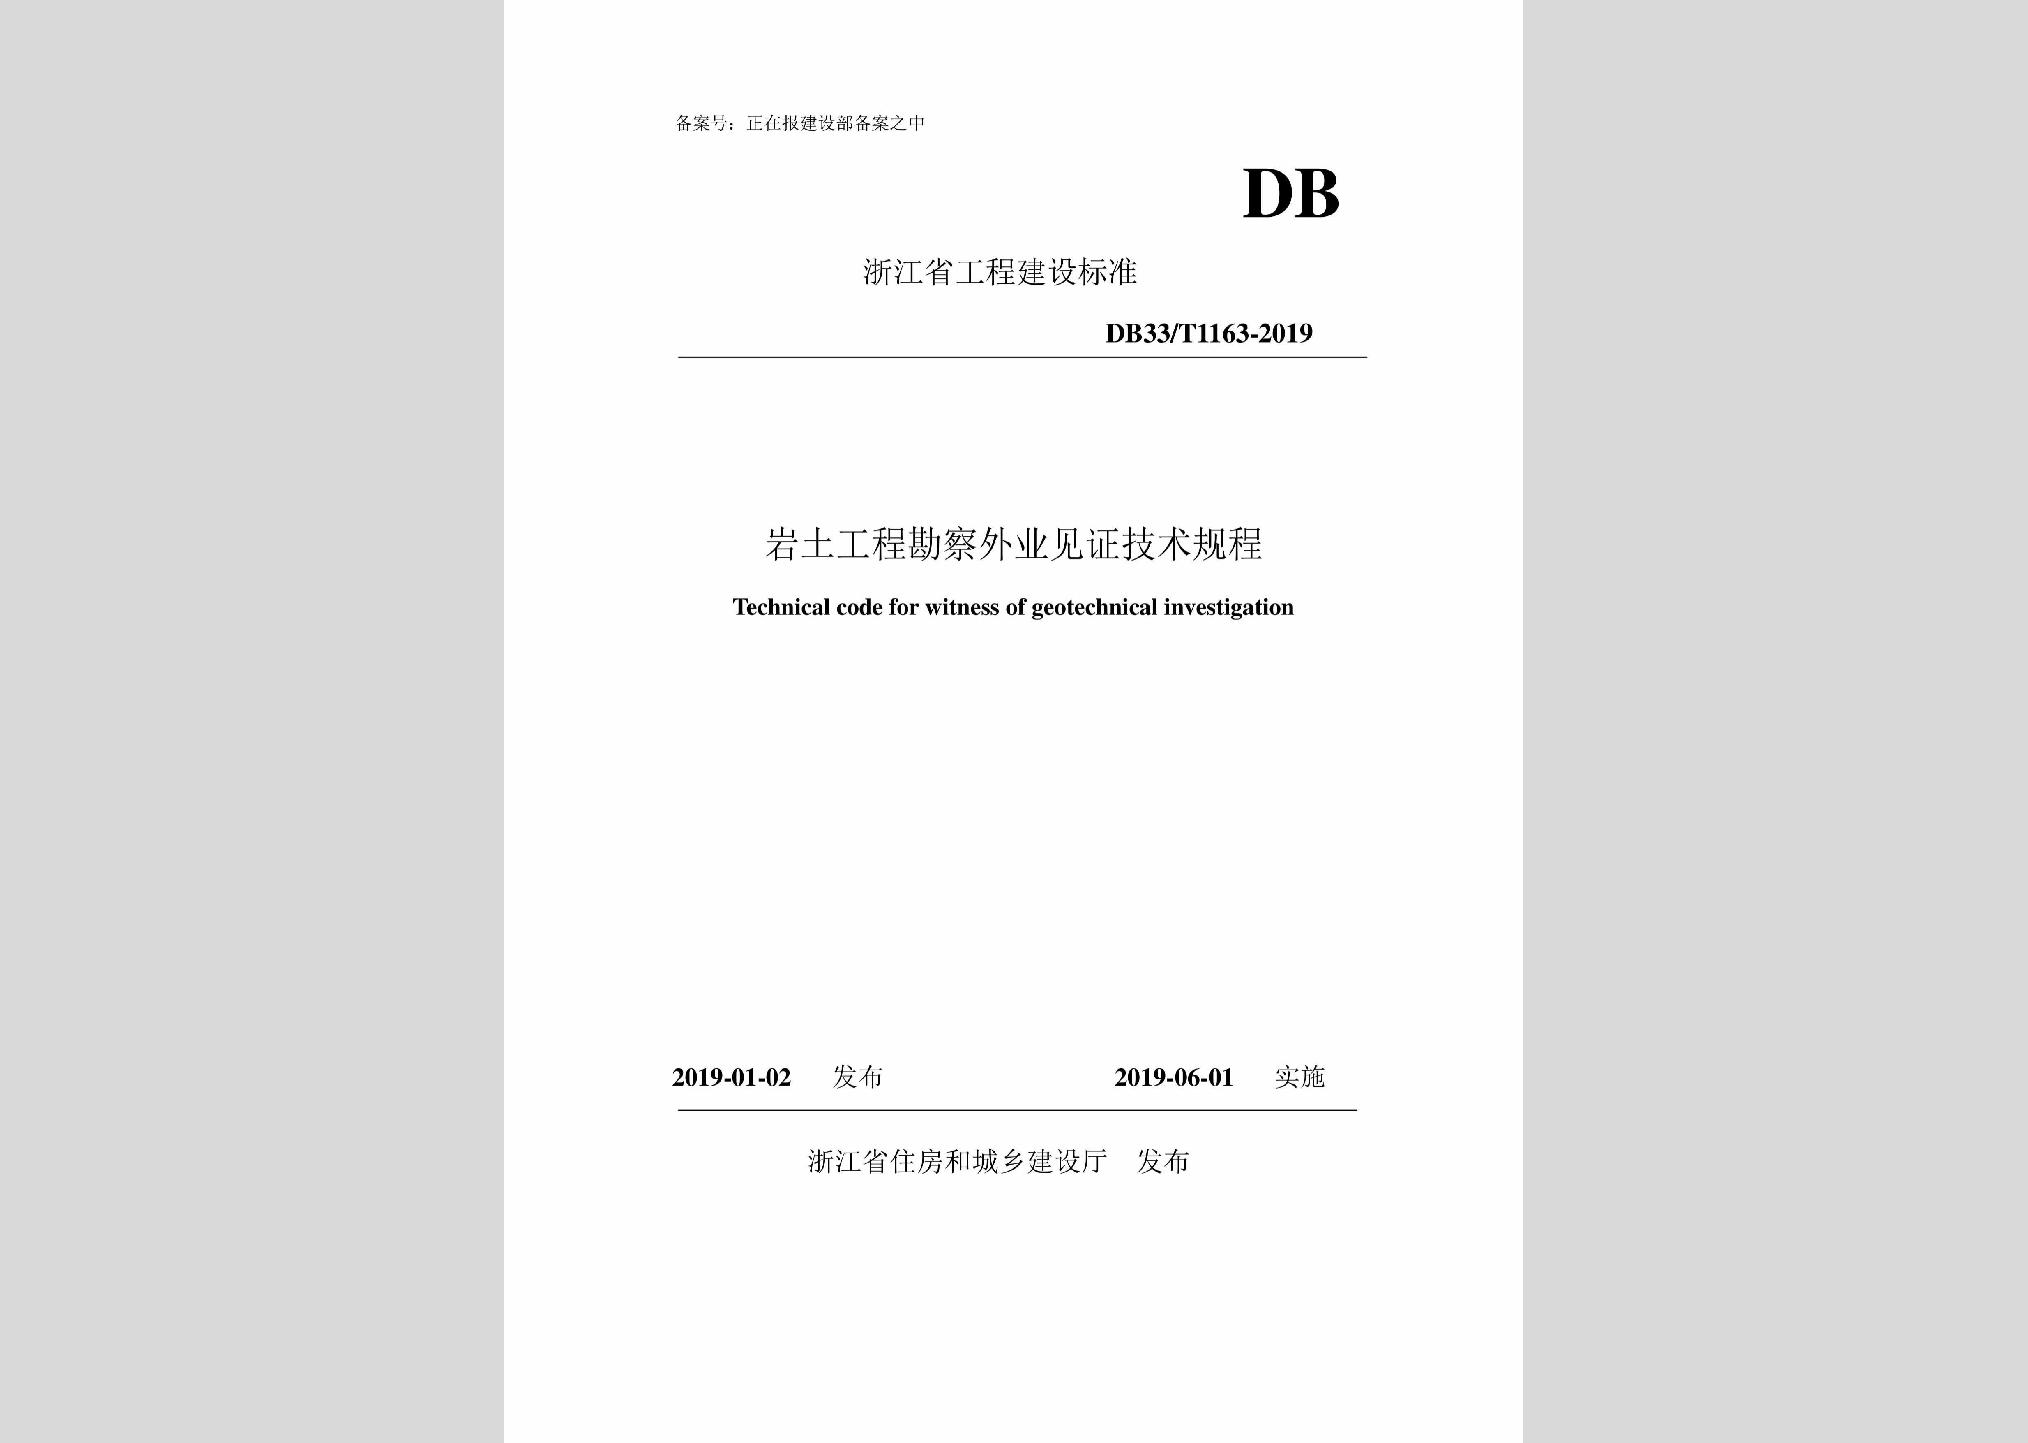 DB33/T1163-2019：岩土工程勘察外业见证技术规程